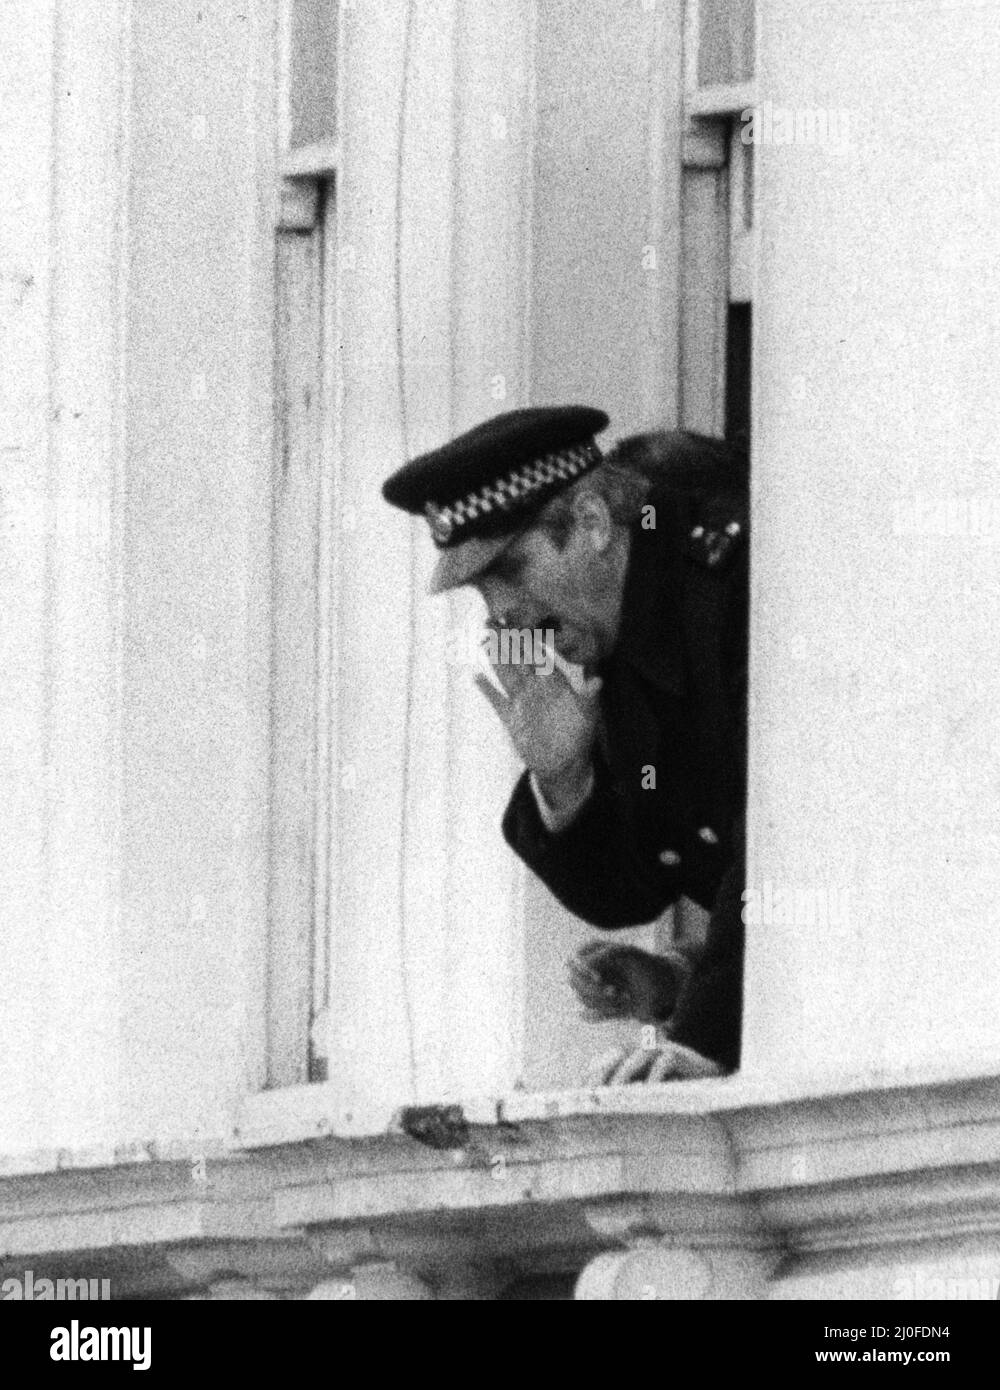 Am fünften Tag der Belagerung der iranischen Botschaft in London stürmten sechs bewaffnete Männer der iranischen extremistischen Gruppe „Demokratische Revolutionsbewegung zur Befreiung Arabistans“ das Gebäude und nahmen 26 Geiseln, bevor die SAS die Botschaft zurückeroberten und die Geiseln befreiten. Der Geiselpolizist Trevor Lock schreit vom Balkon der Botschaft aus Anweisungen an die Polizeibeamten unten. 4. Mai 1980. Stockfoto